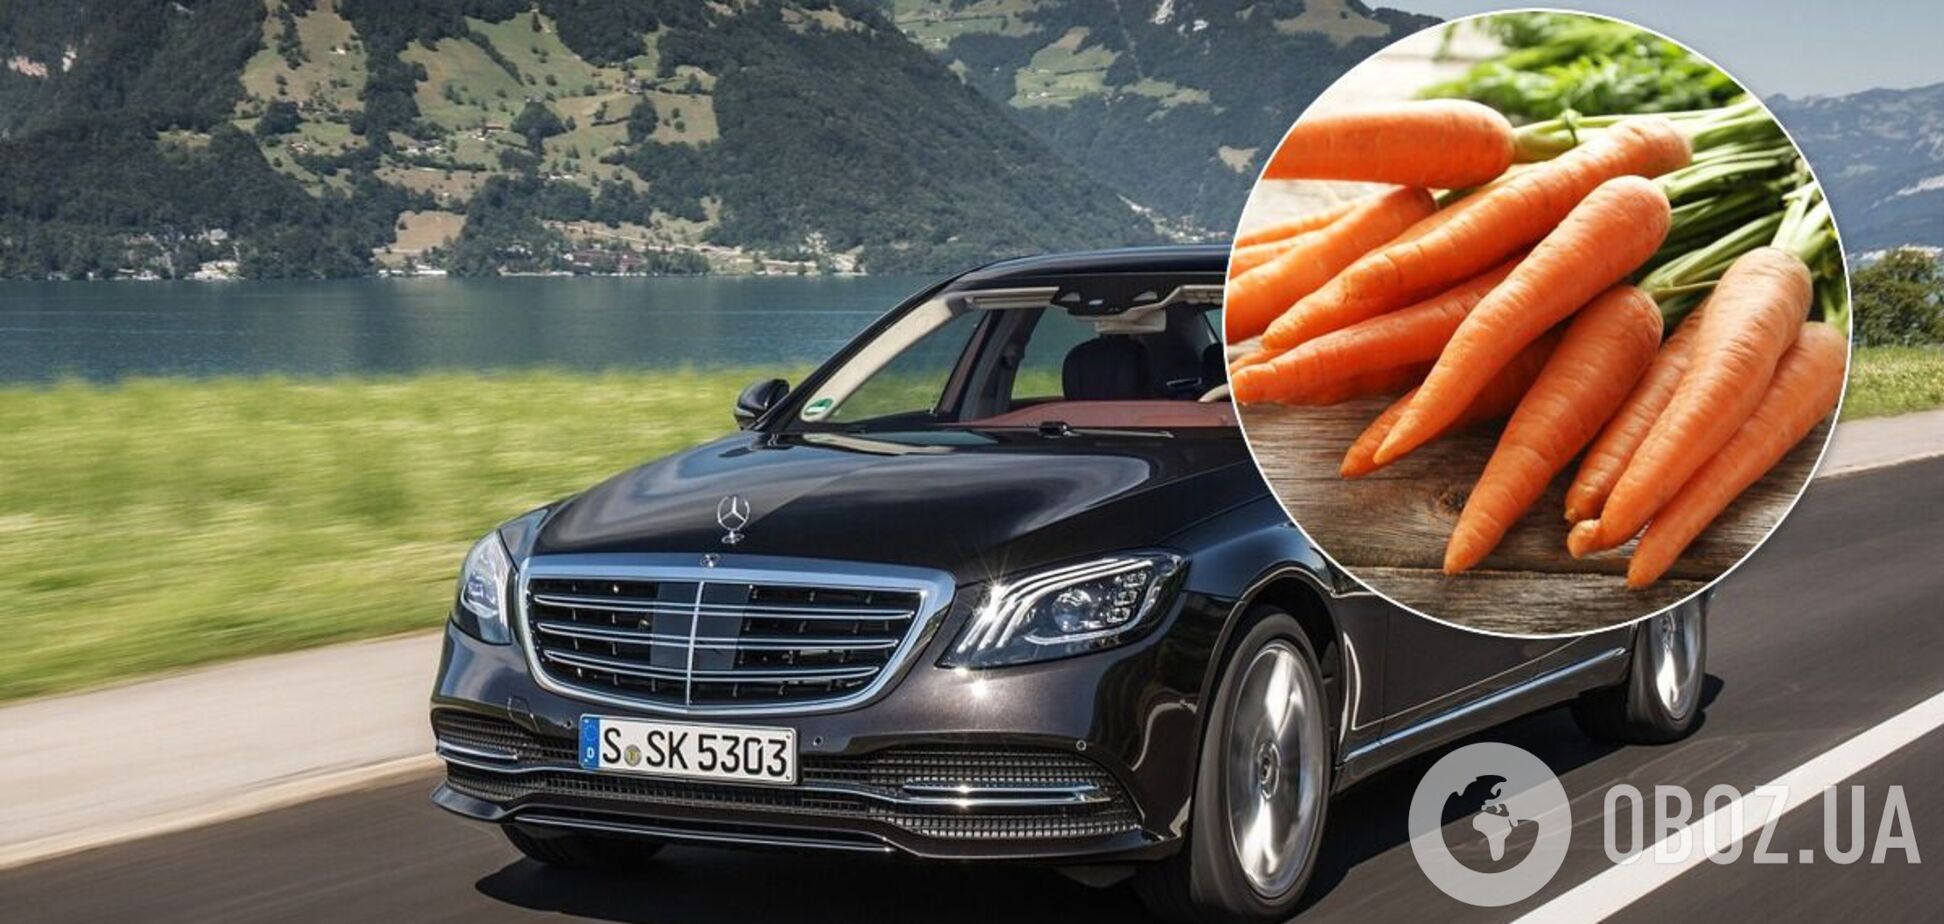 У Києві помітили Mercedes S-Class, навантажений мішками моркви